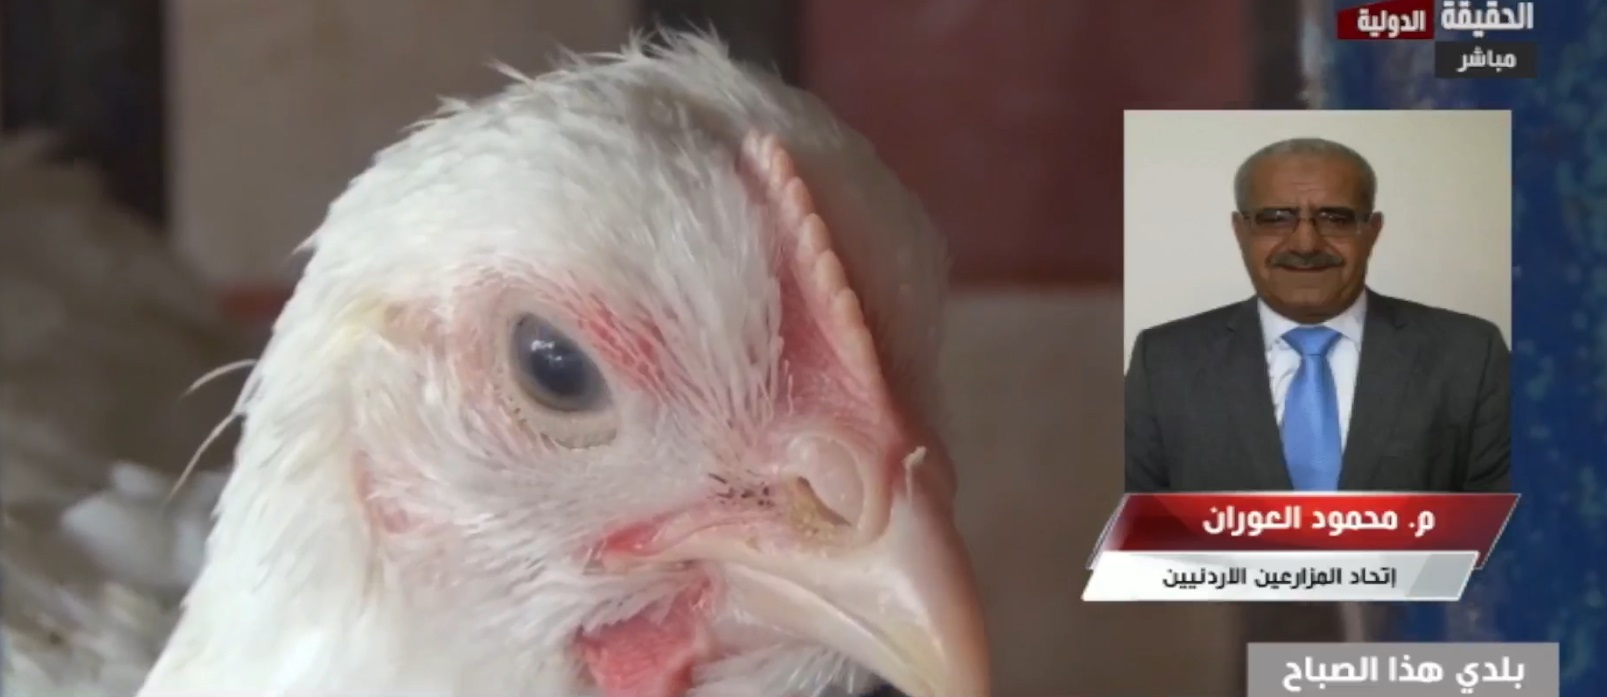 اتحاد المزارعين: الوزارة لم تشاركنا الرأي قبل تحديد سقوف سعرية للدجاج الطازج.. فيديو